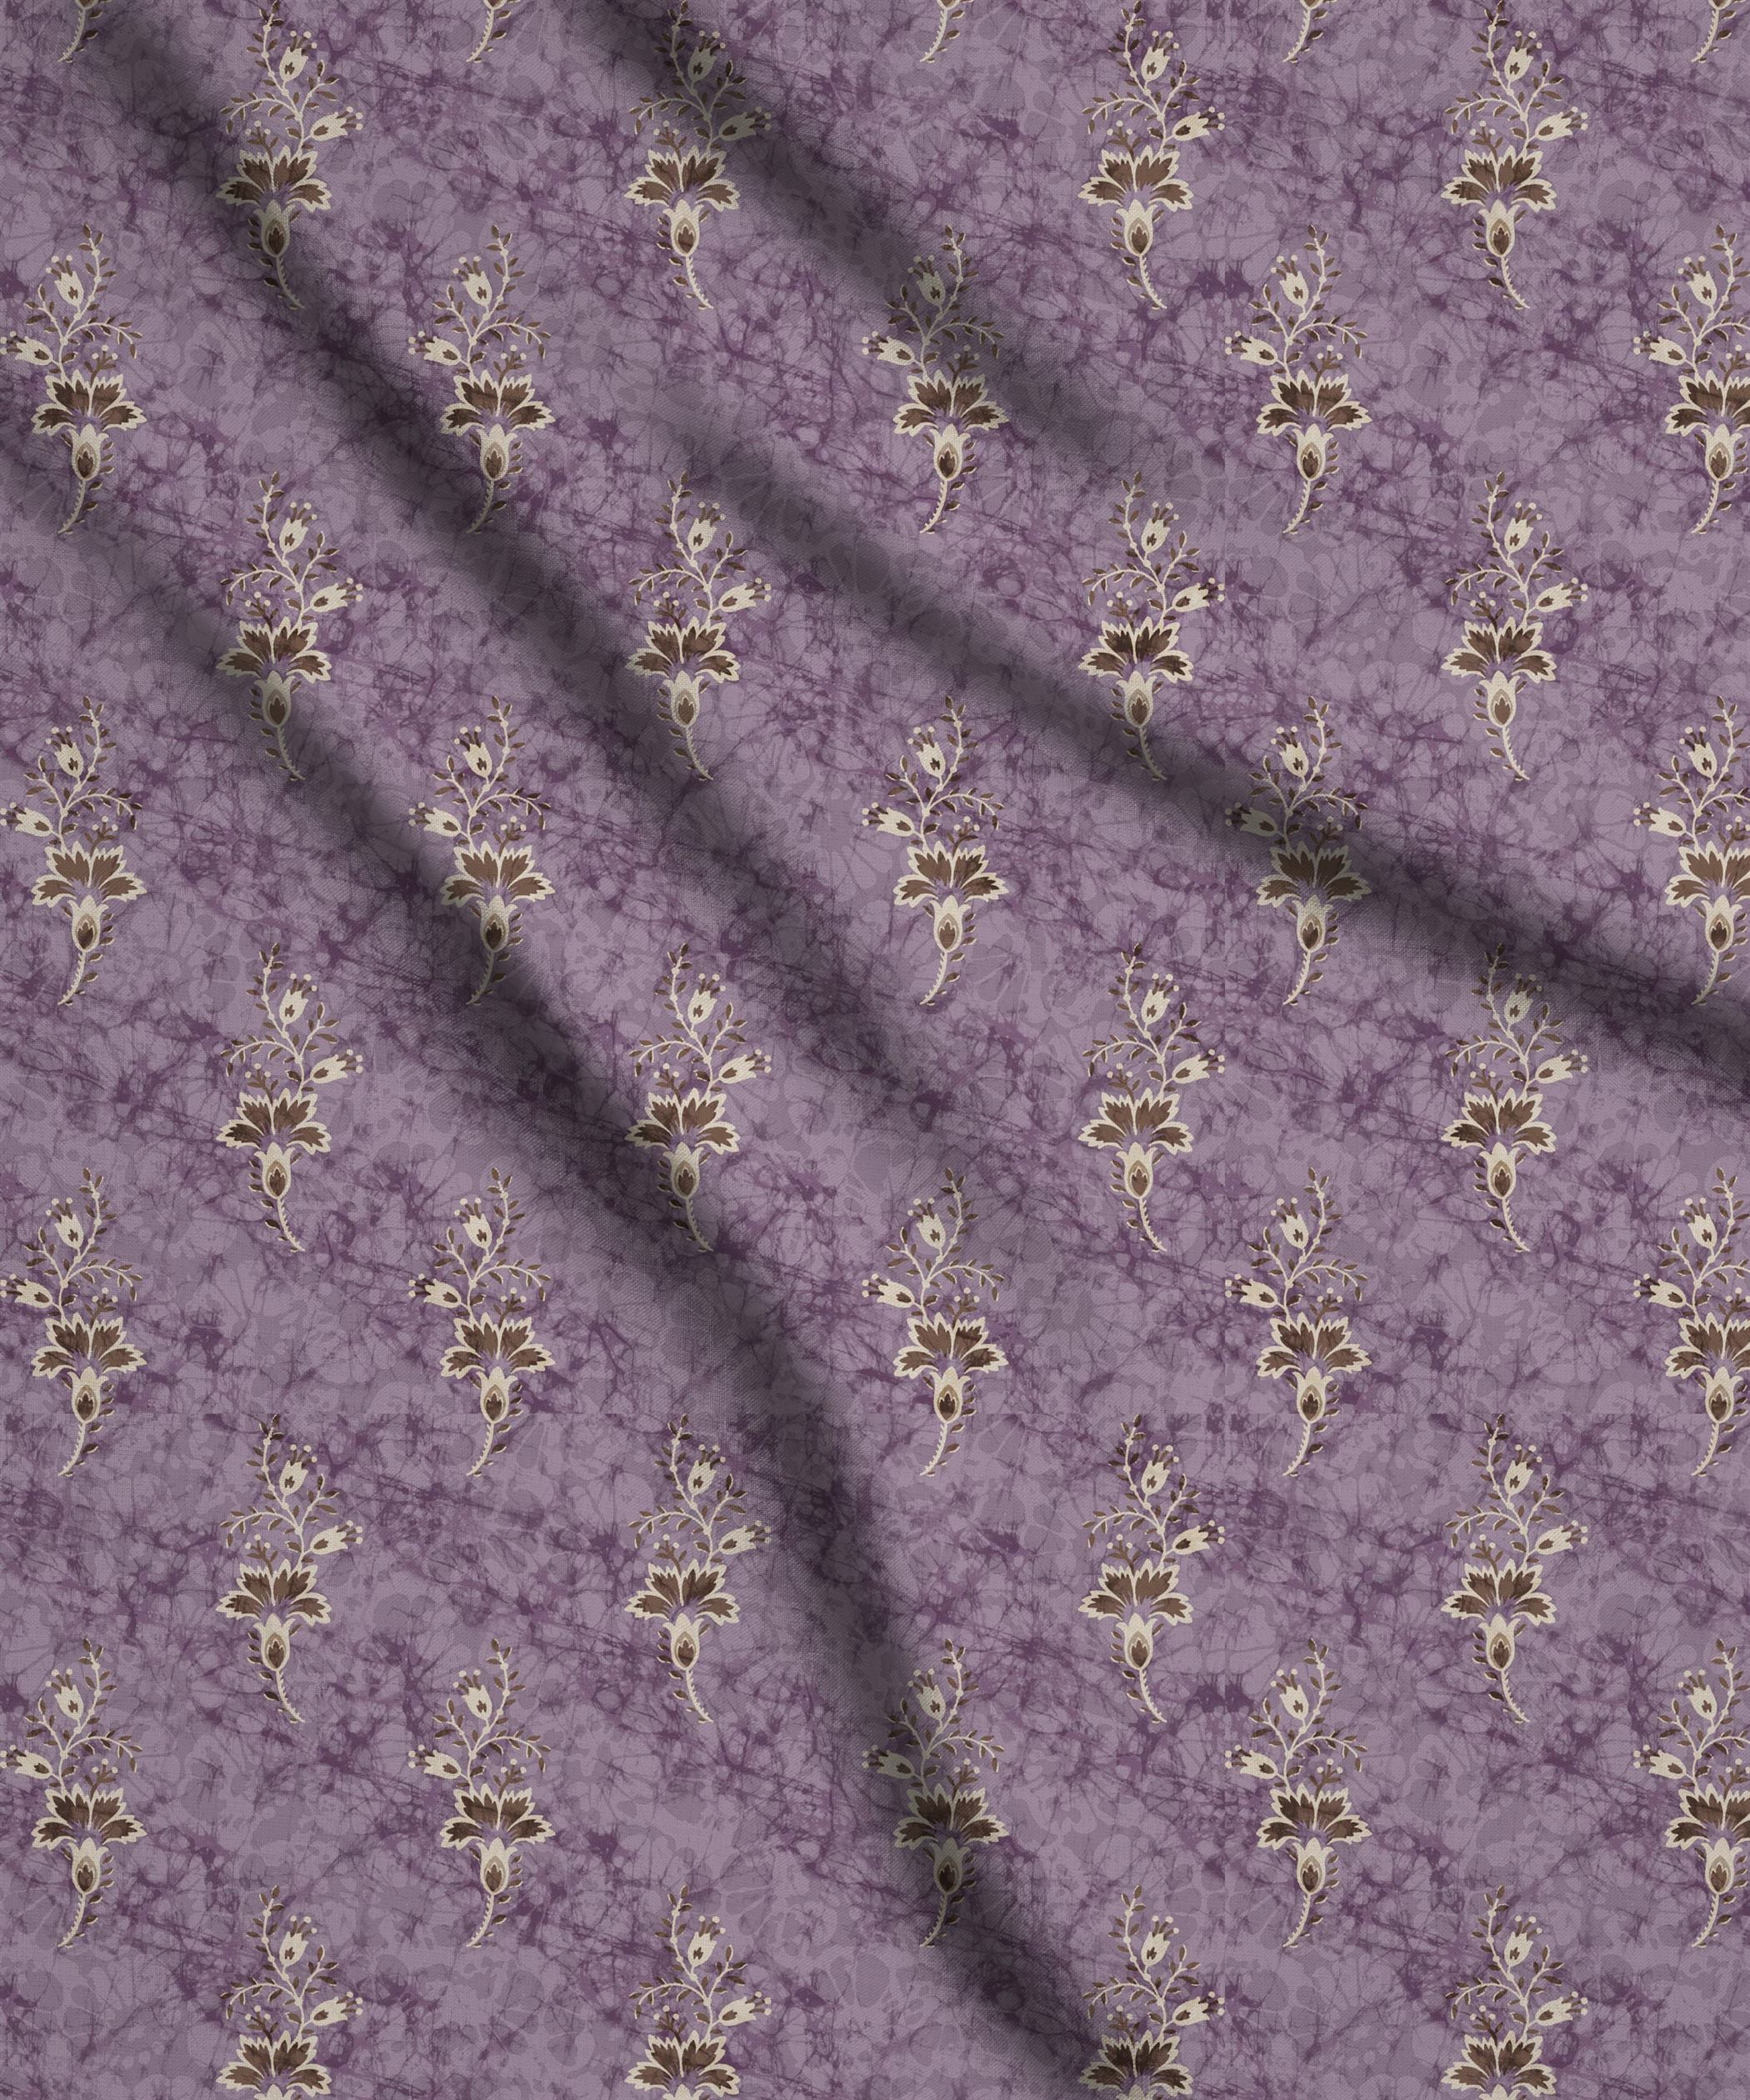 Lilac-Hibiscus Ajrakh Print